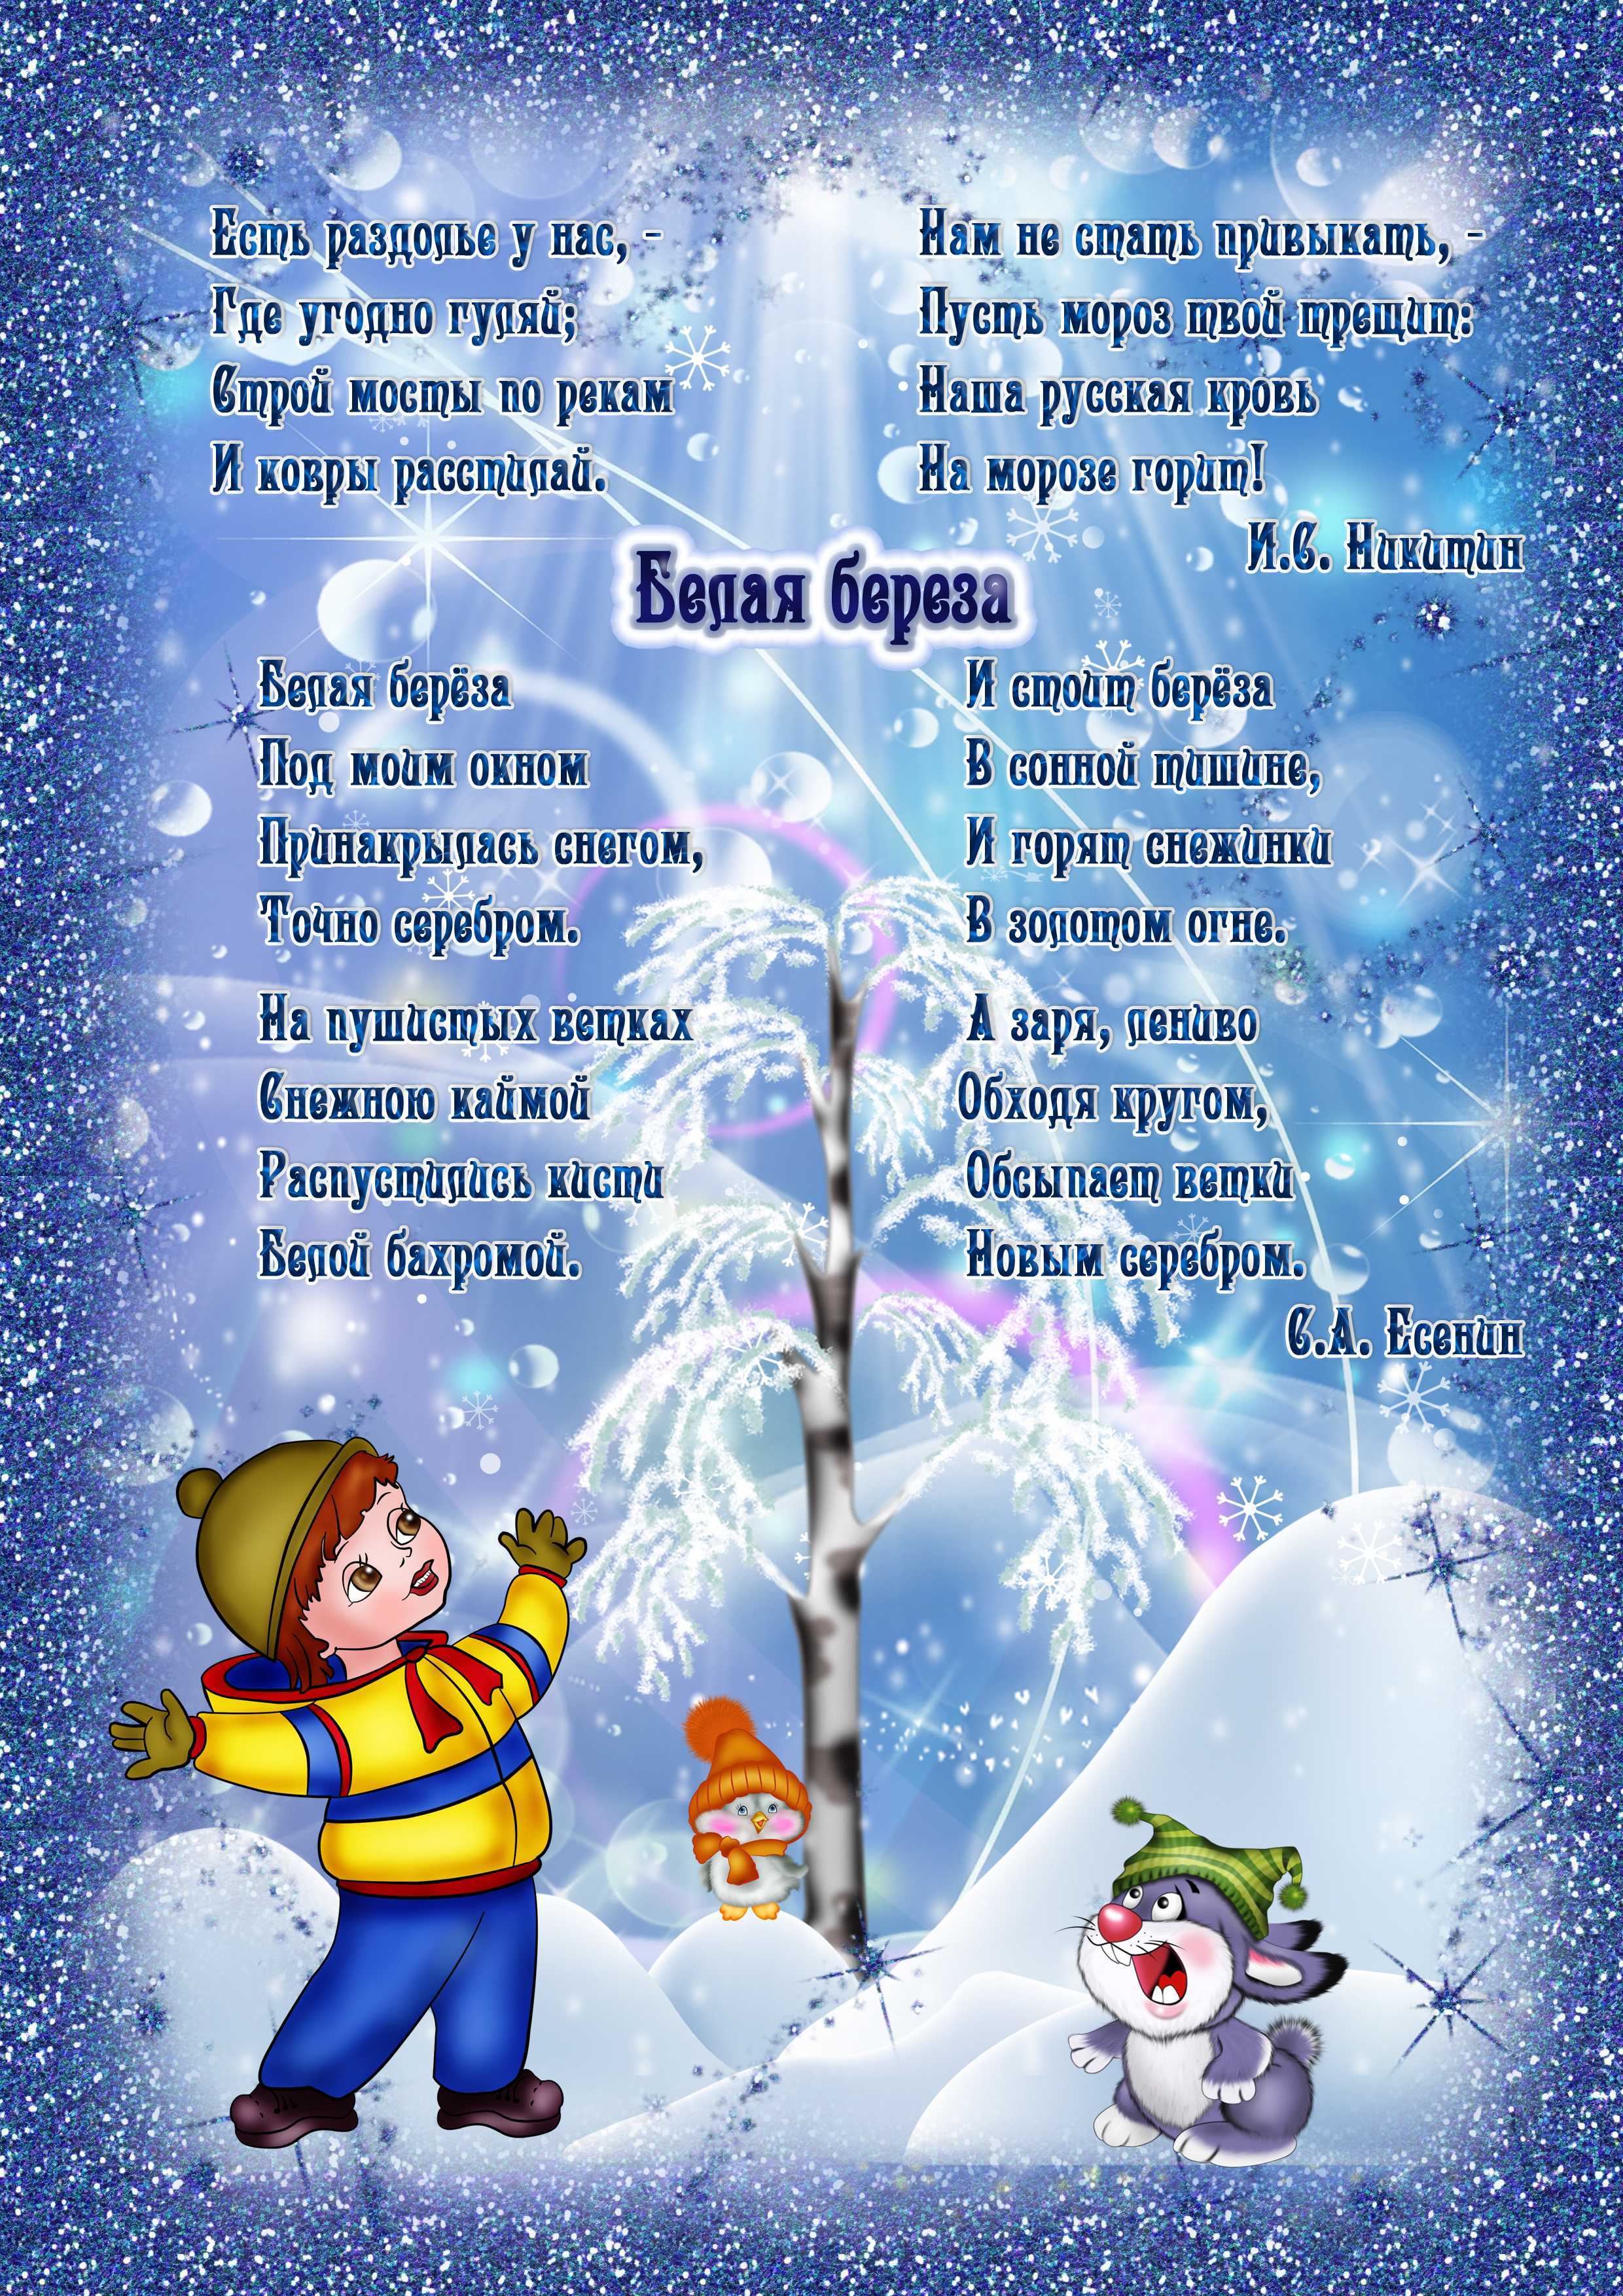 Зима, снег, мороз, метель и вьюги. новые стихи для детей.